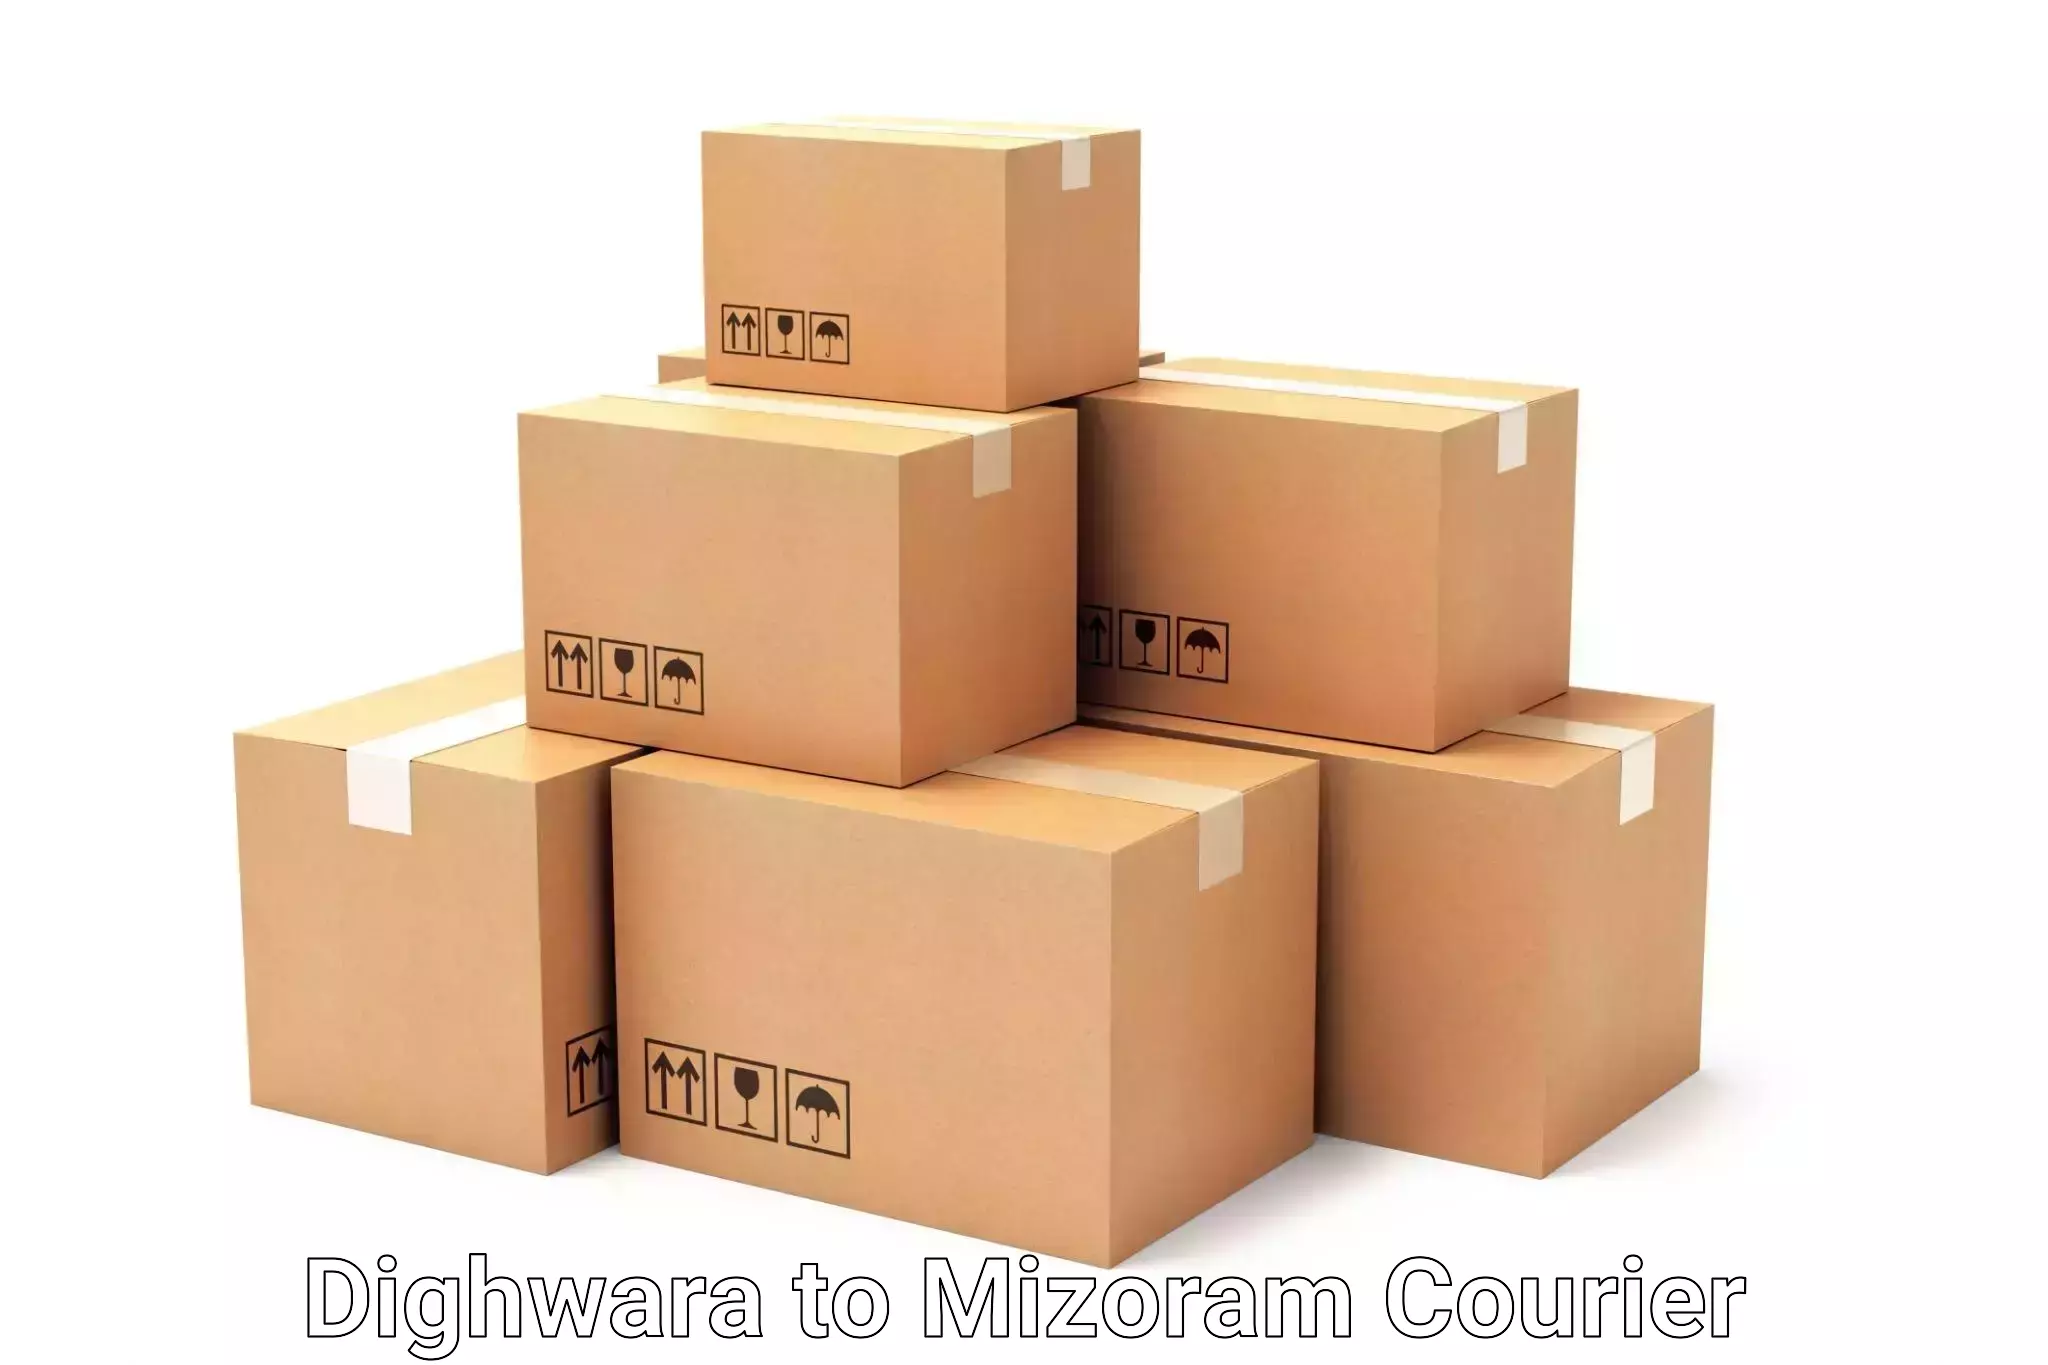 Weekend baggage shipping Dighwara to Mizoram